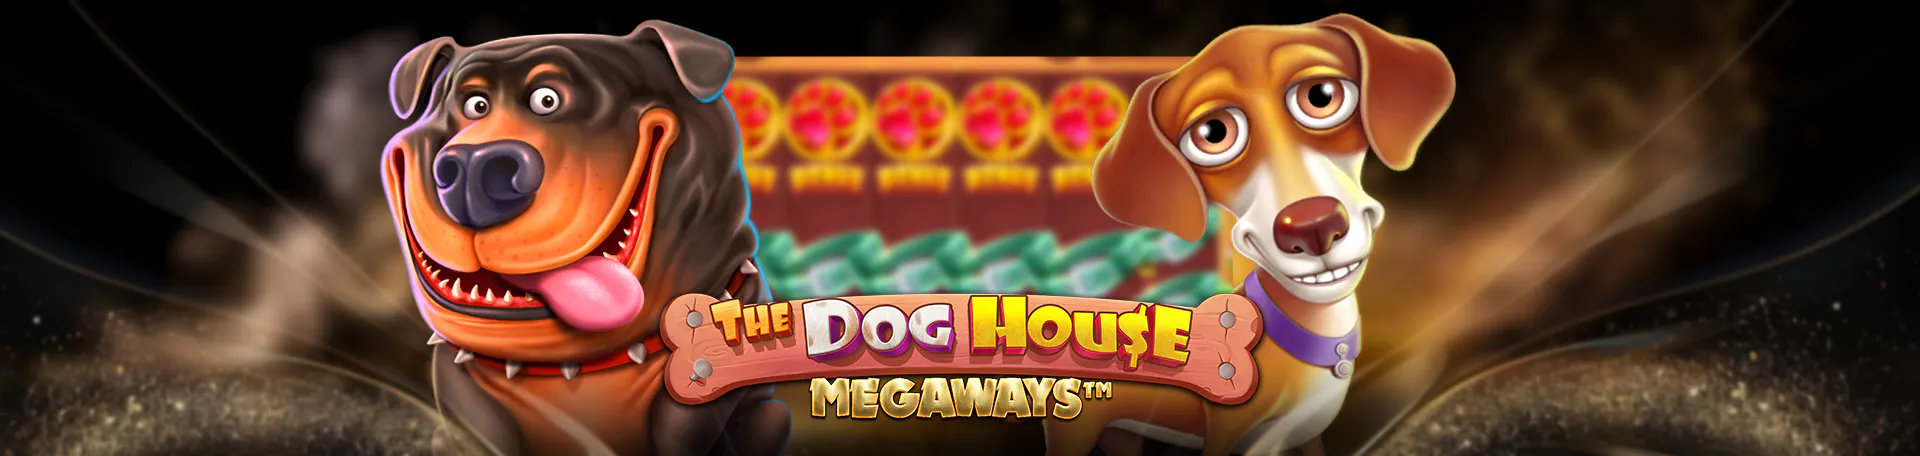 The-Dog-House-Megaways-logo